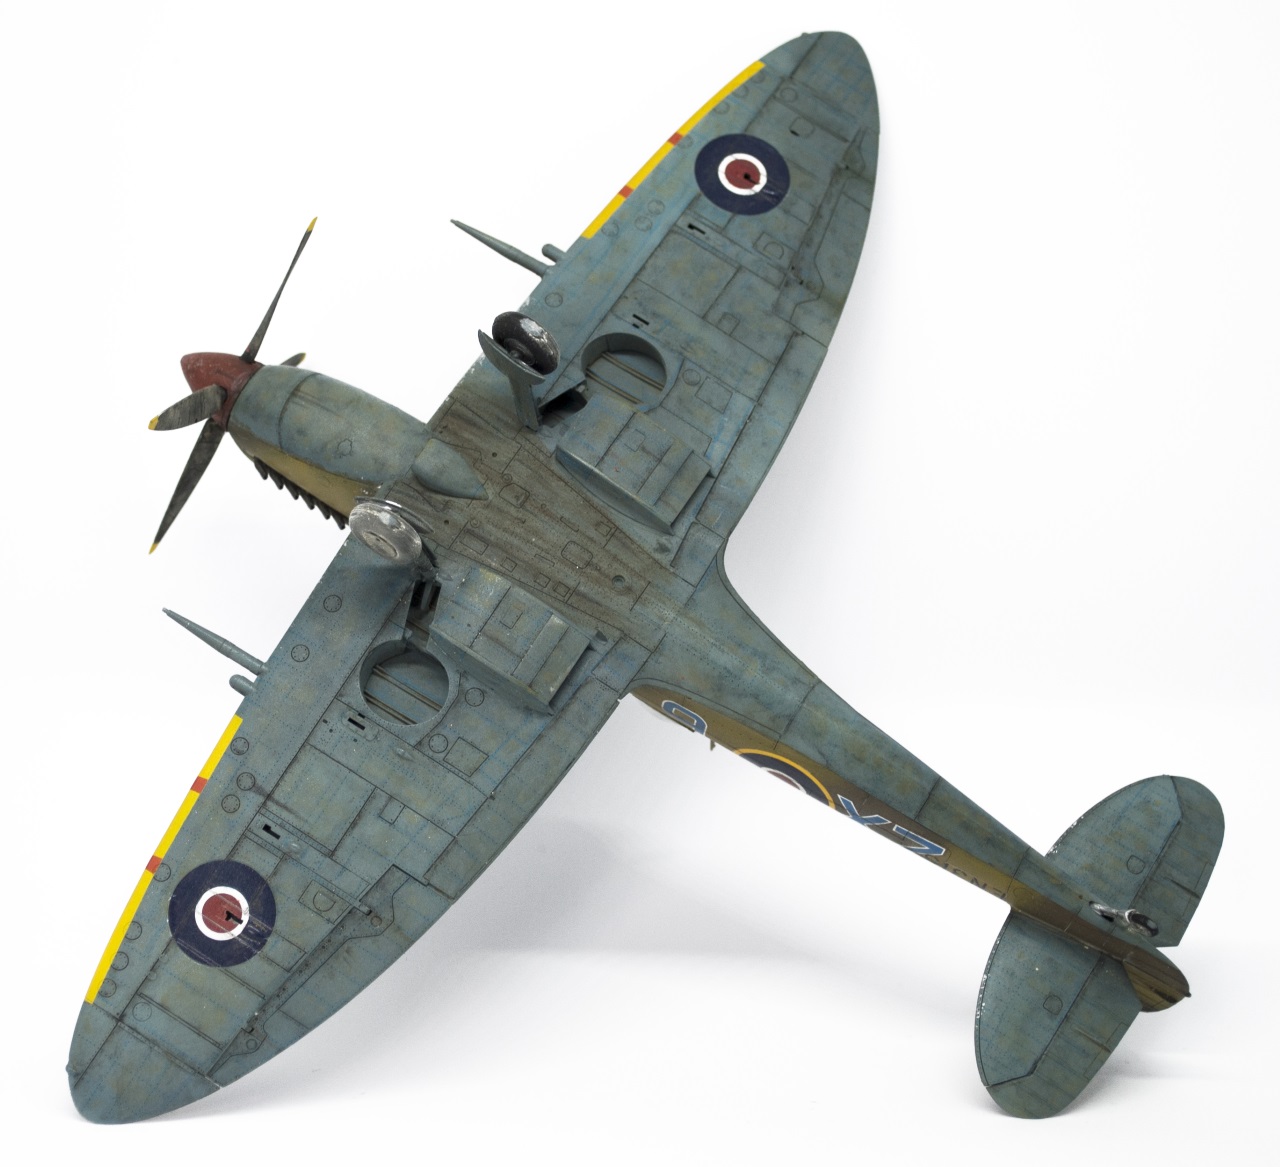 Spitfire Mk IXc "early" - Eduard 1/48 - Cirque Skalski - Scénette FINIE 18041310233522113415666339